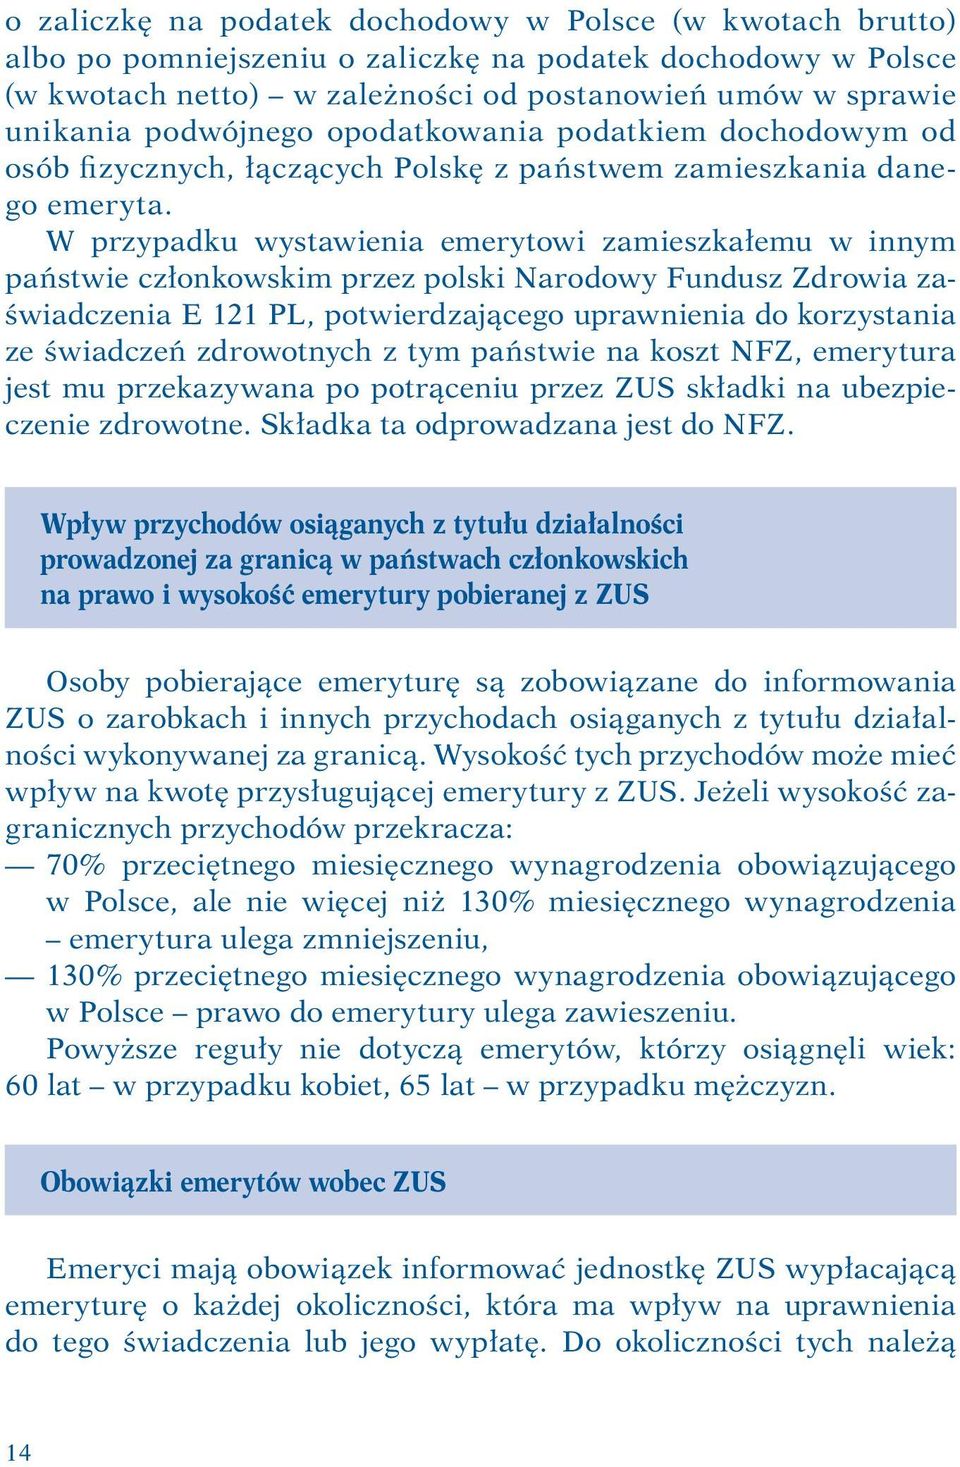 W przypadku wystawienia emerytowi zamieszkałemu w innym państwie członkowskim przez polski Narodowy Fundusz Zdrowia zaświadczenia E 121 PL, potwierdzającego uprawnienia do korzystania ze świadczeń